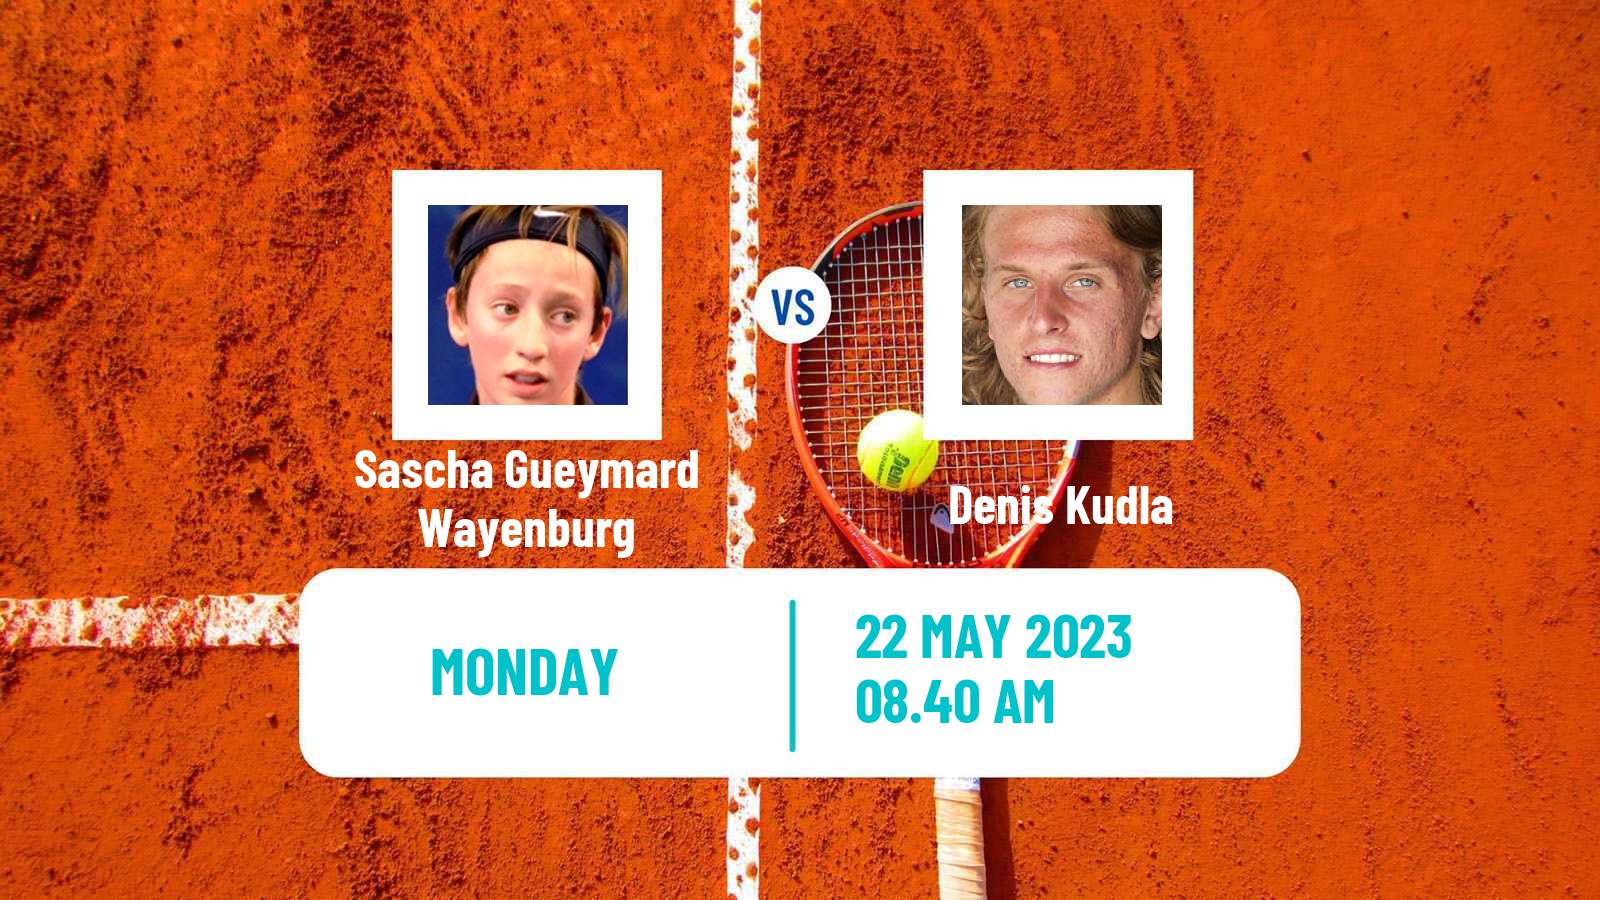 Tennis ATP Roland Garros Sascha Gueymard Wayenburg - Denis Kudla